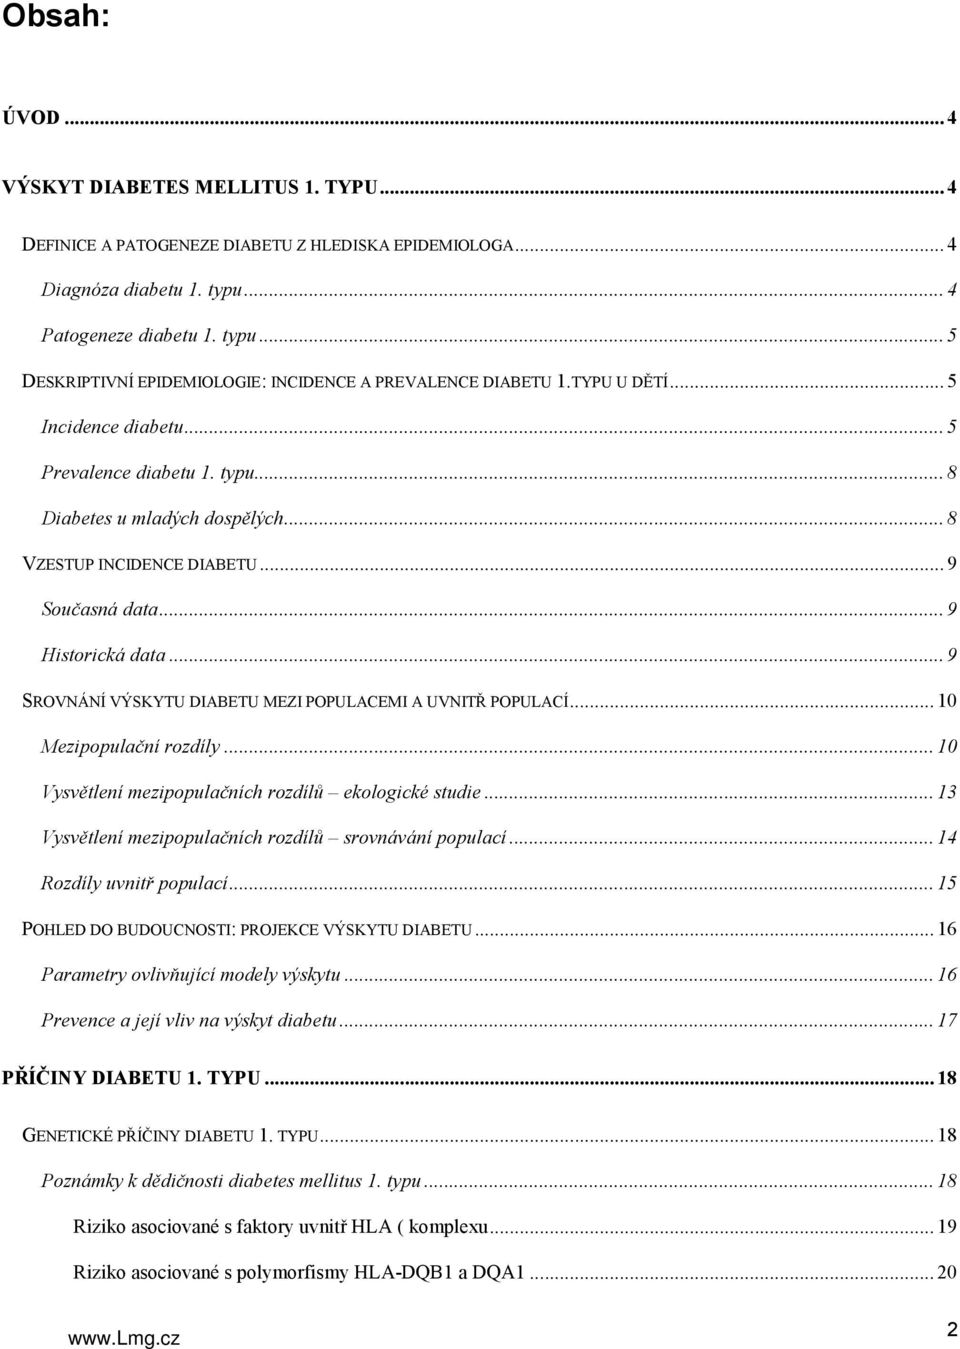 Deskriptivní, analytická a genetická epidemiologie dětského diabetu 1. typu  - PDF Stažení zdarma